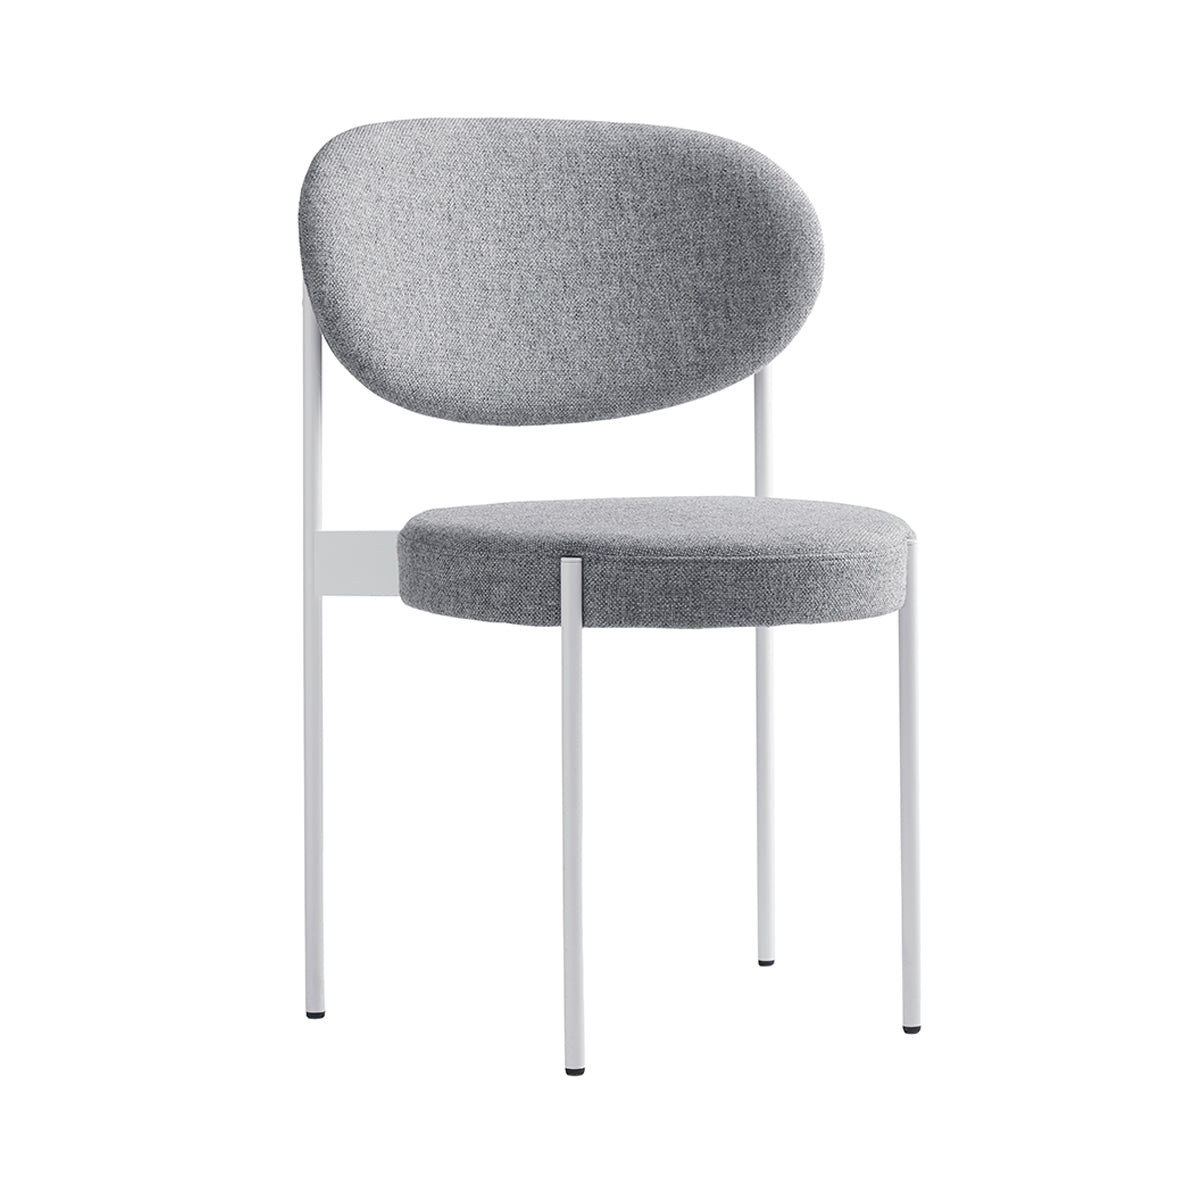 Series 430 Chair: White